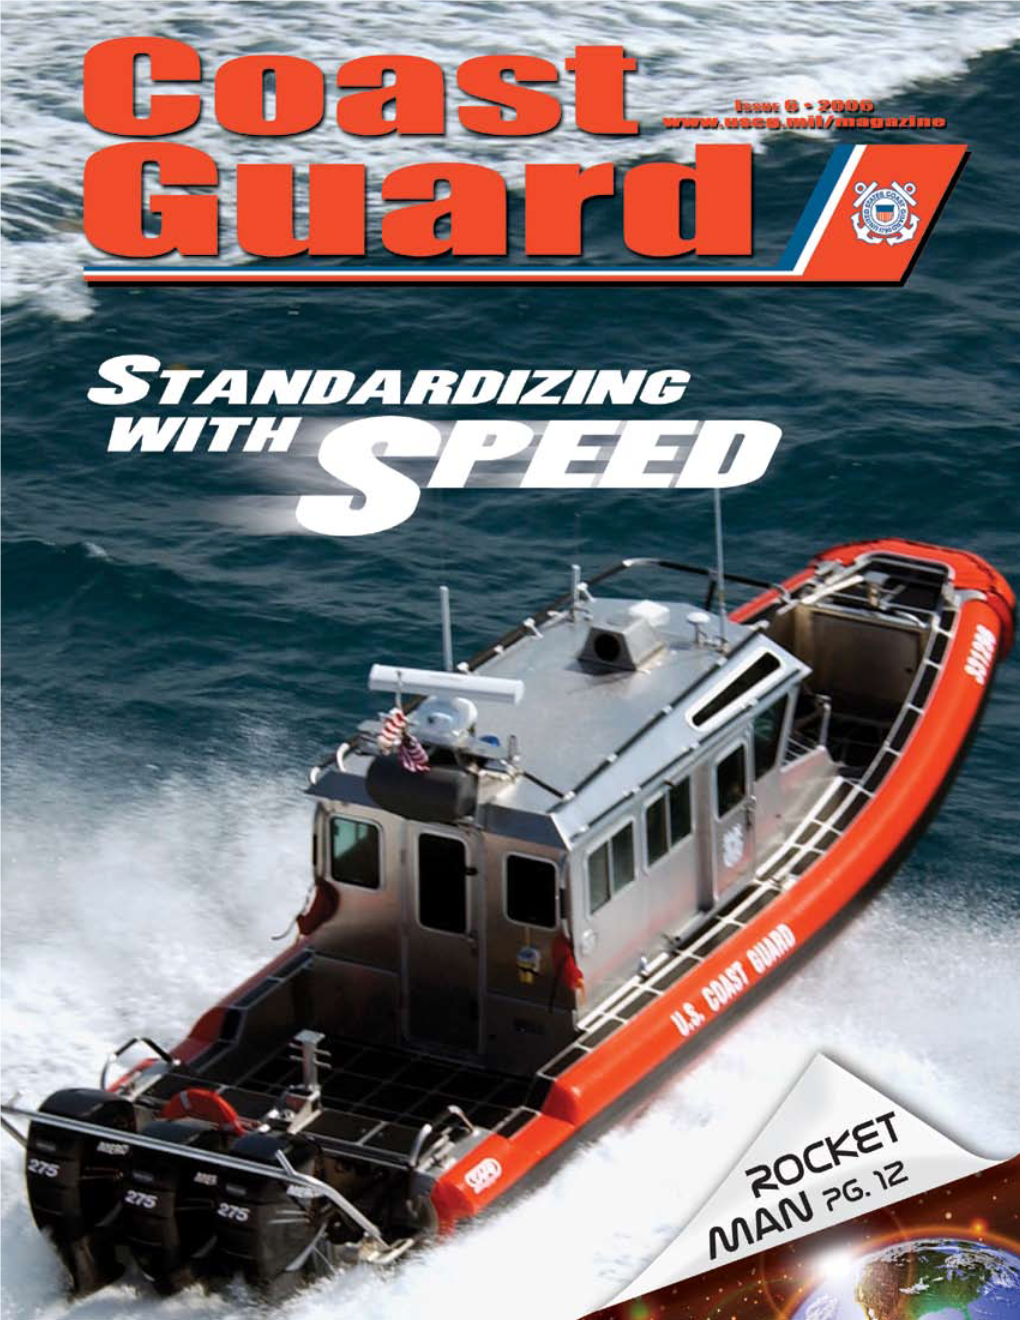 USCG Mascots Small Boat Standardization 20 Story by PA1 Mike O’Berry, CG Magazine